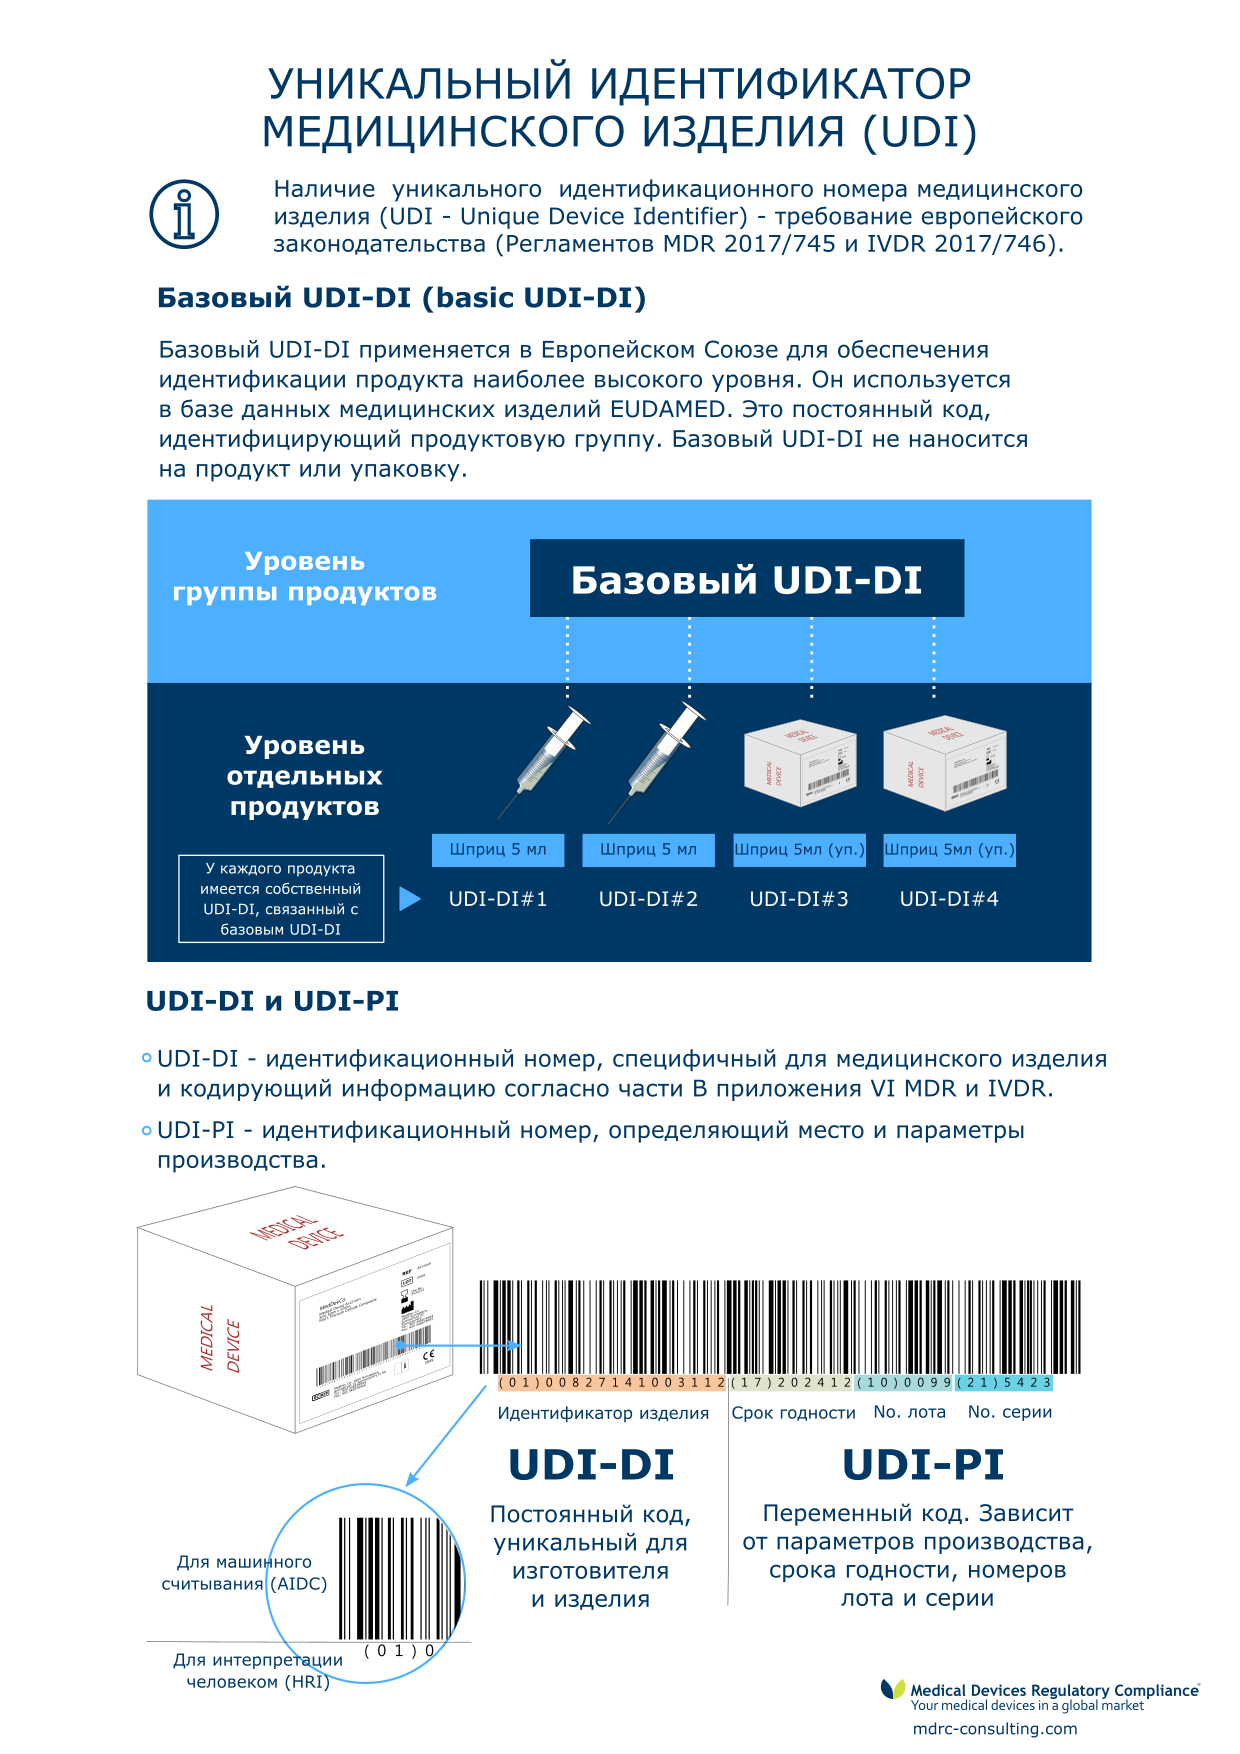 UDI - Unique Device Identifier: инфографика